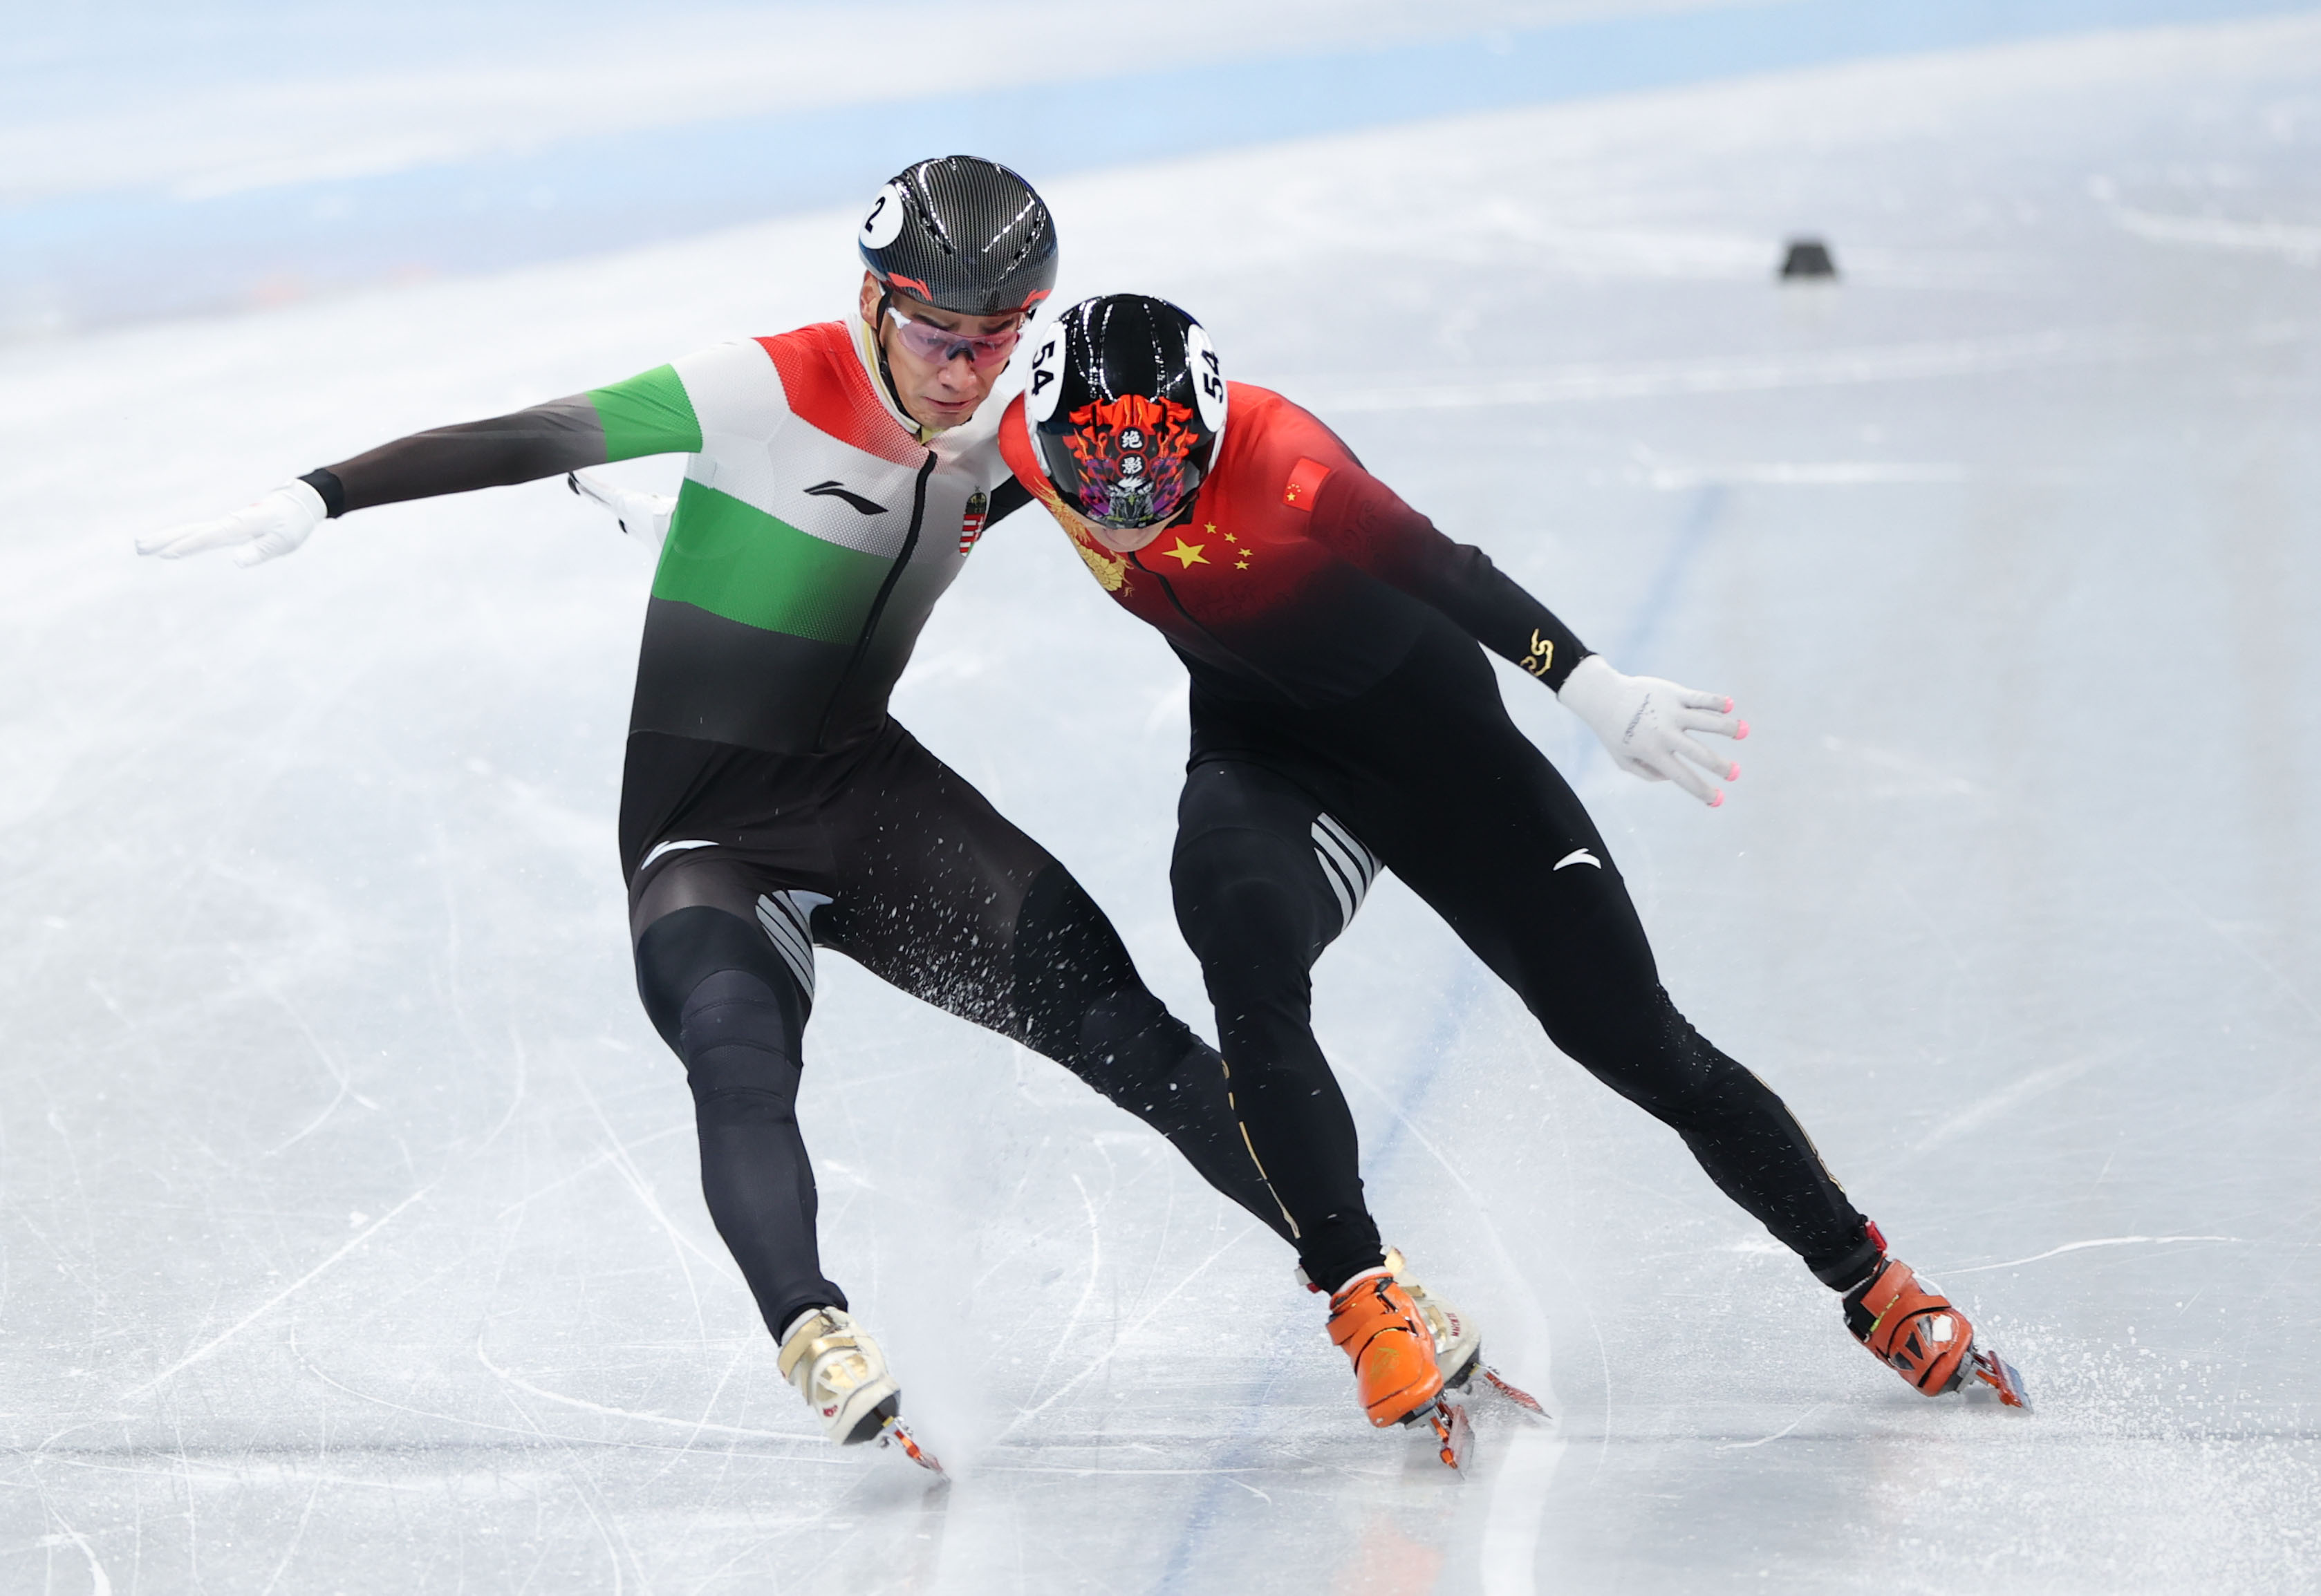 短道速滑——男子1000米决赛：中国选手任子威夺冠